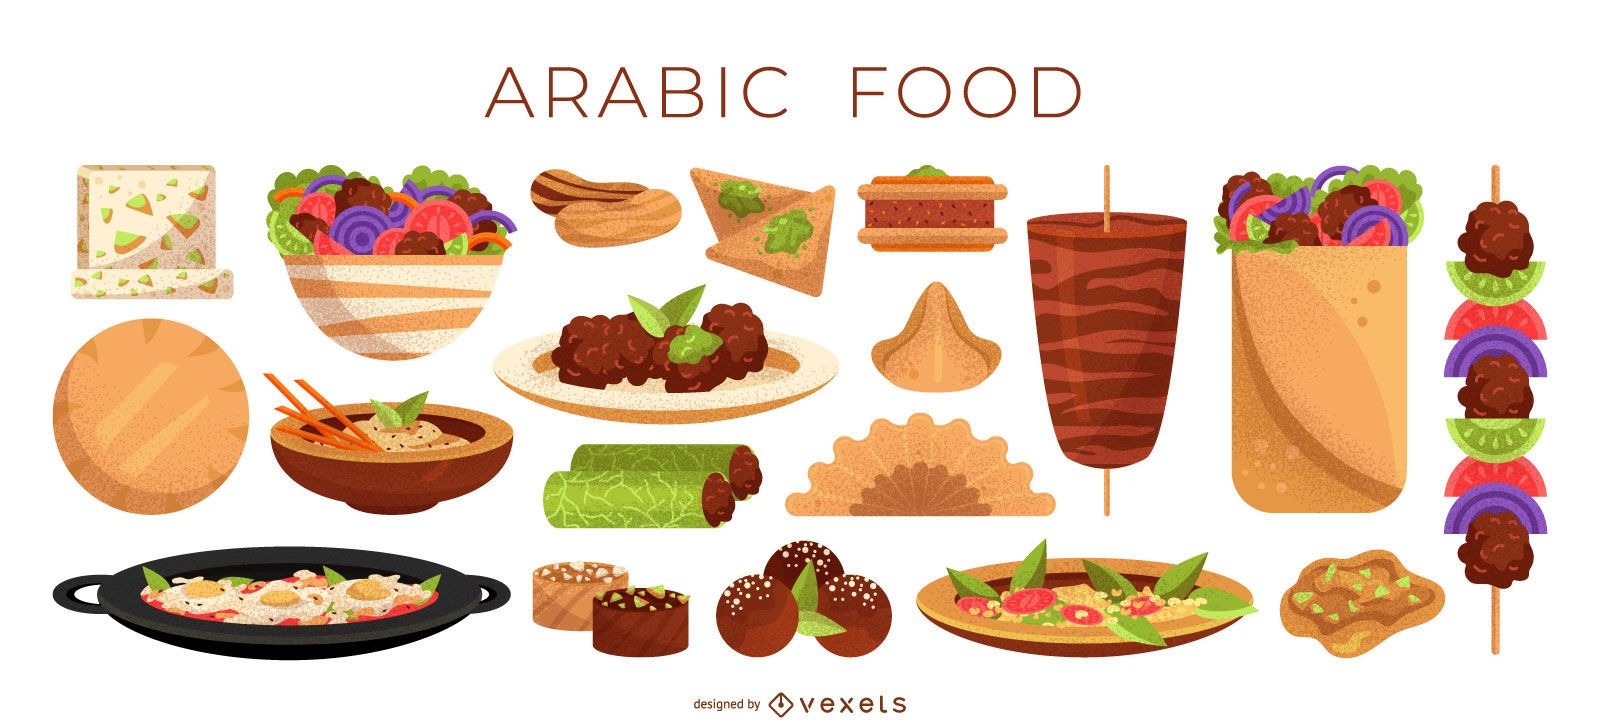 Arabische Lebensmittelillustrationssammlung